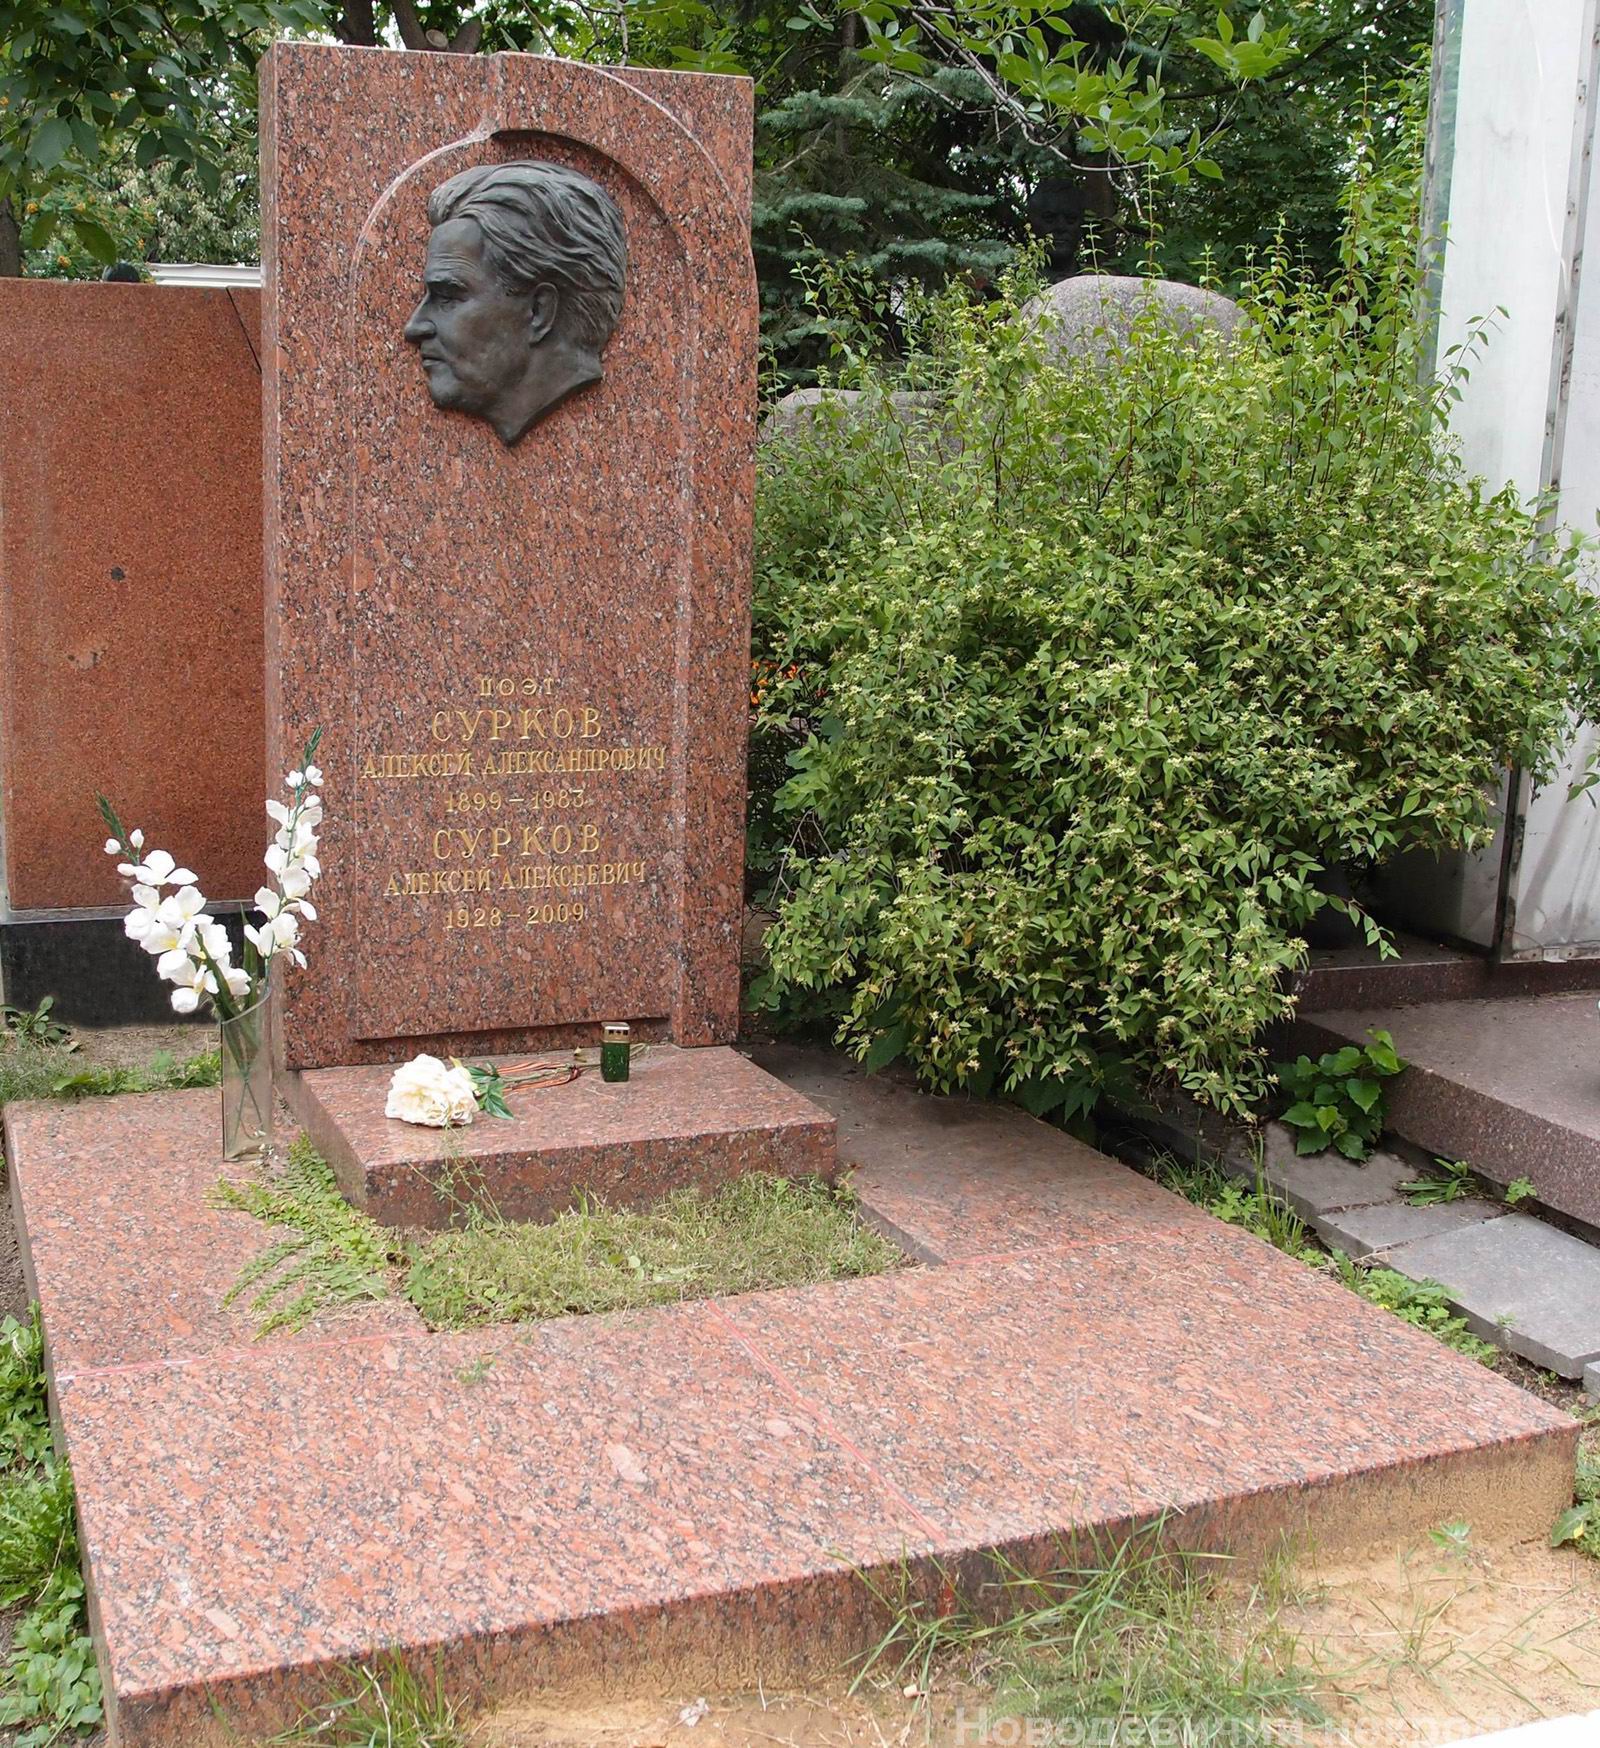 Памятник на могиле Суркова А.А. (1899–1983), ск. П.Шапиро, арх. А.Гераскин, на Новодевичьем кладбище (10–1–15).